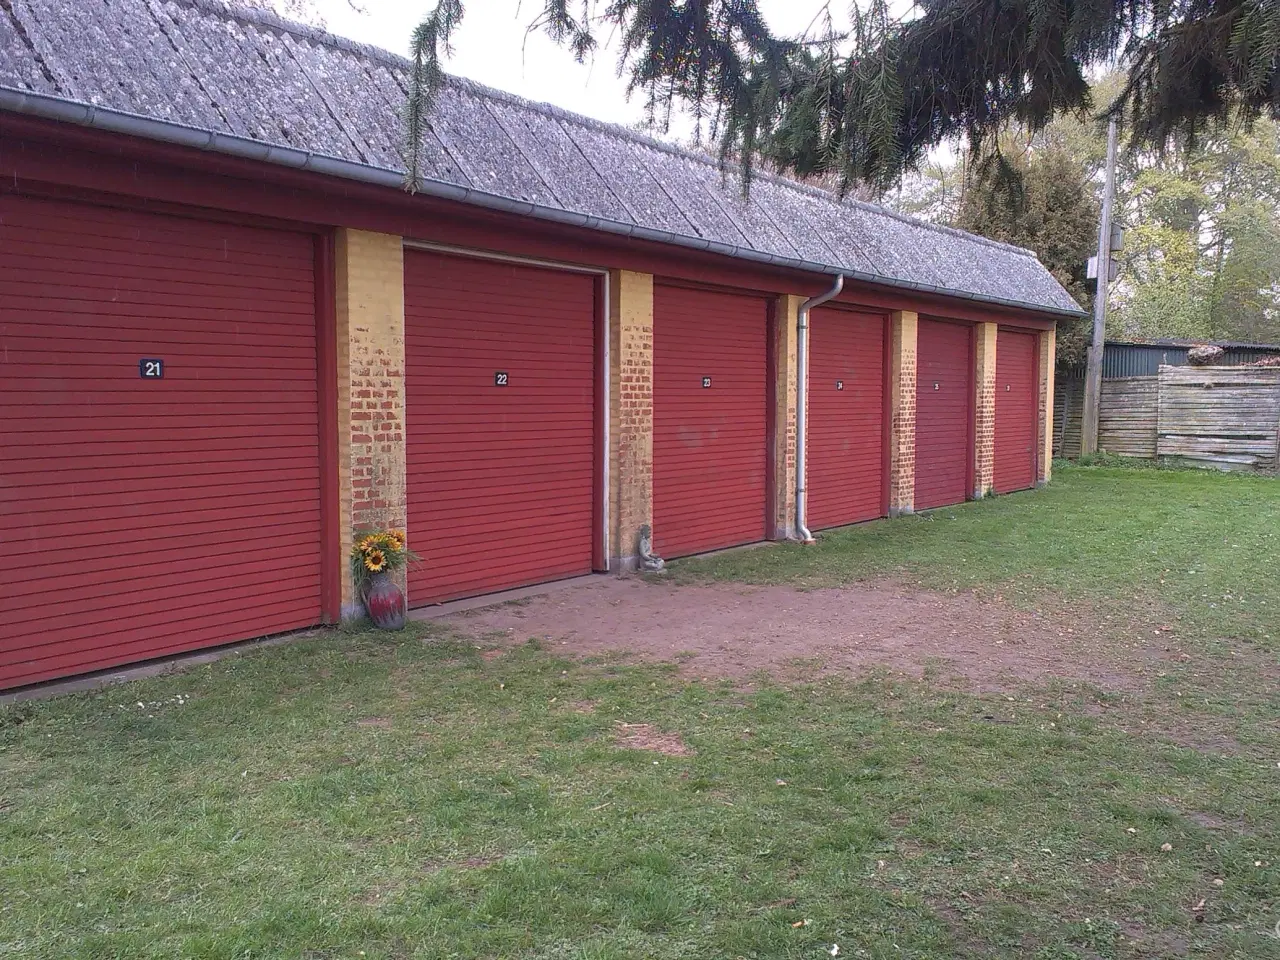 Billede 1 - Garage / lager  til leje i Ørsted på 21 m²